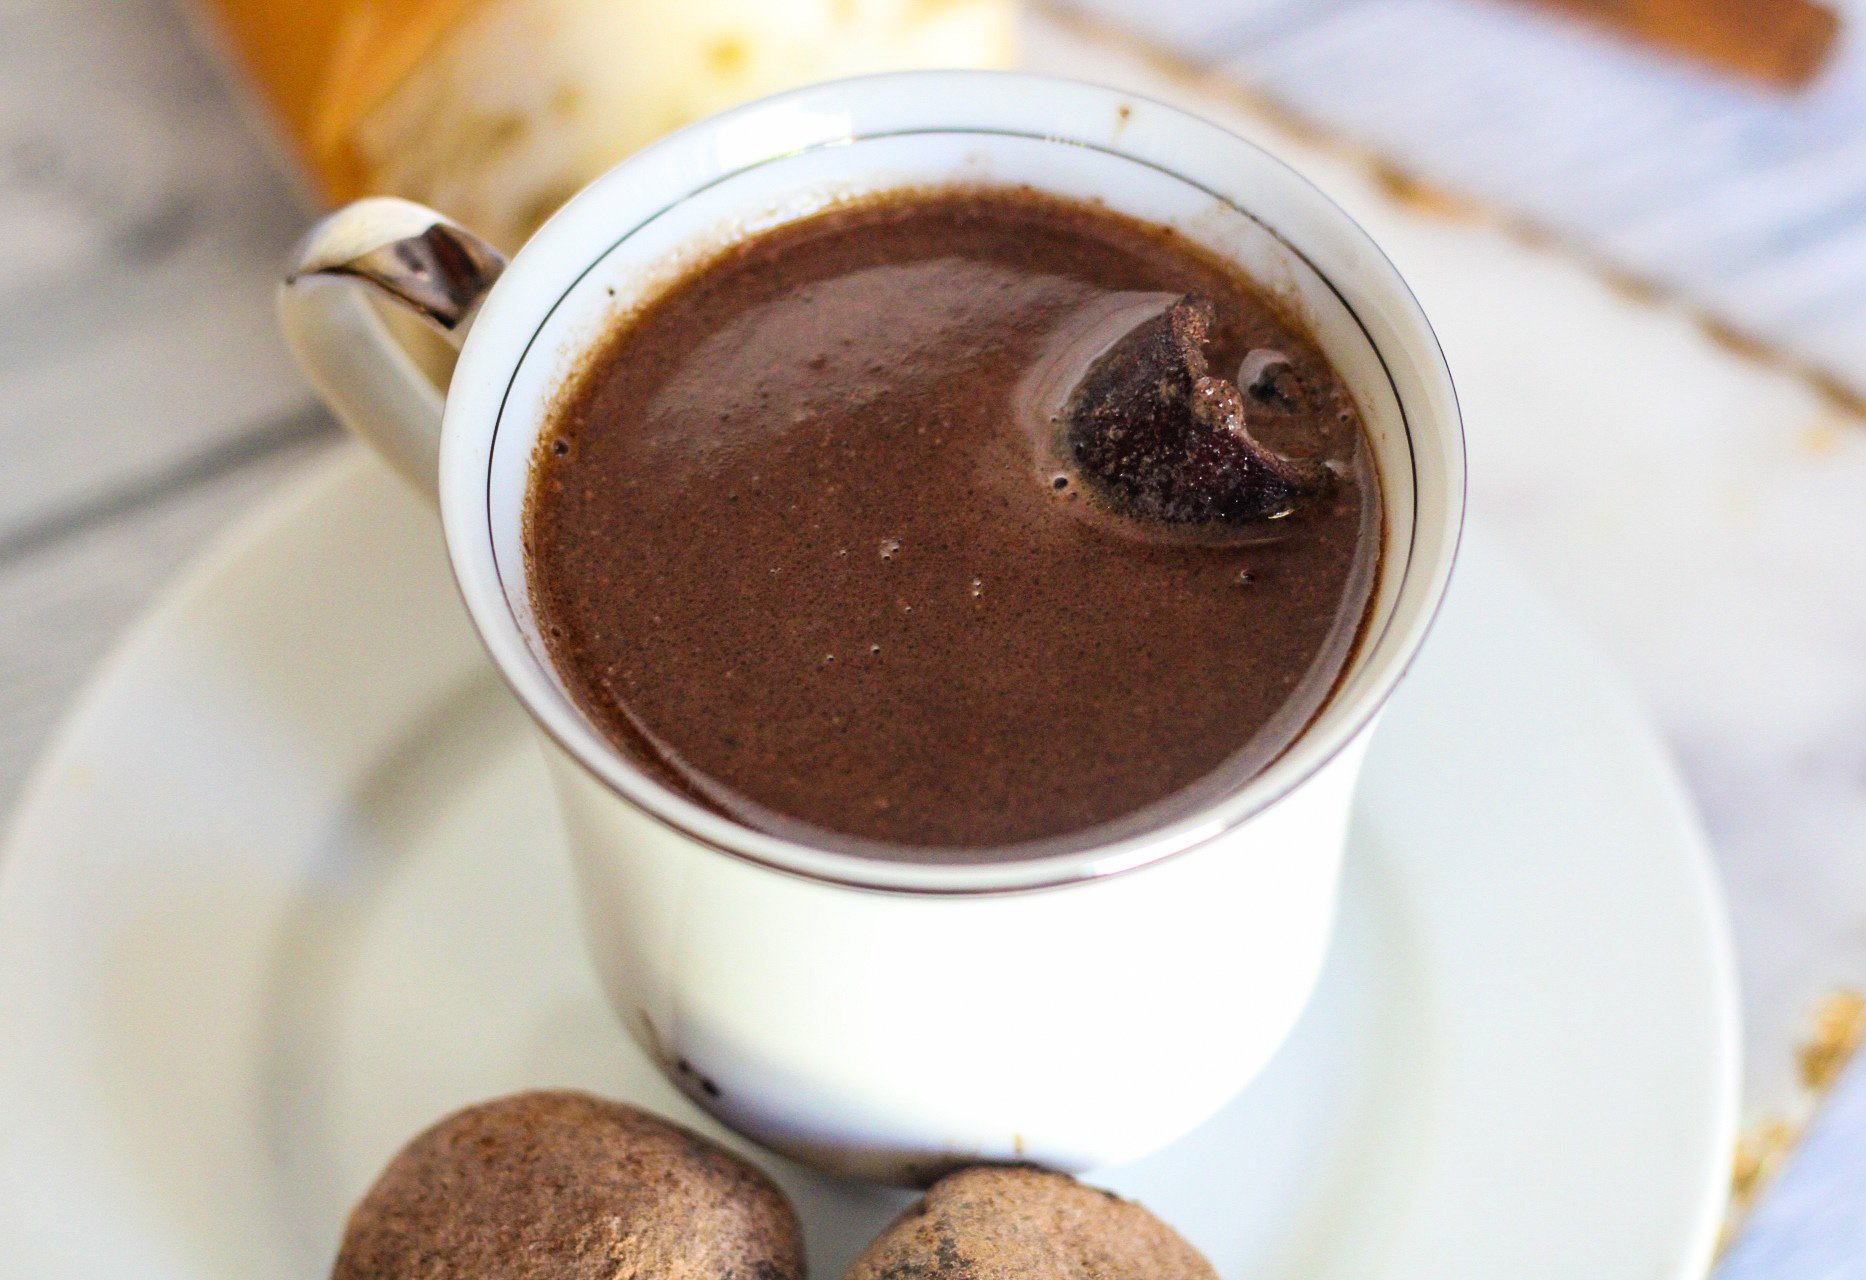 Haitian hot chocolate